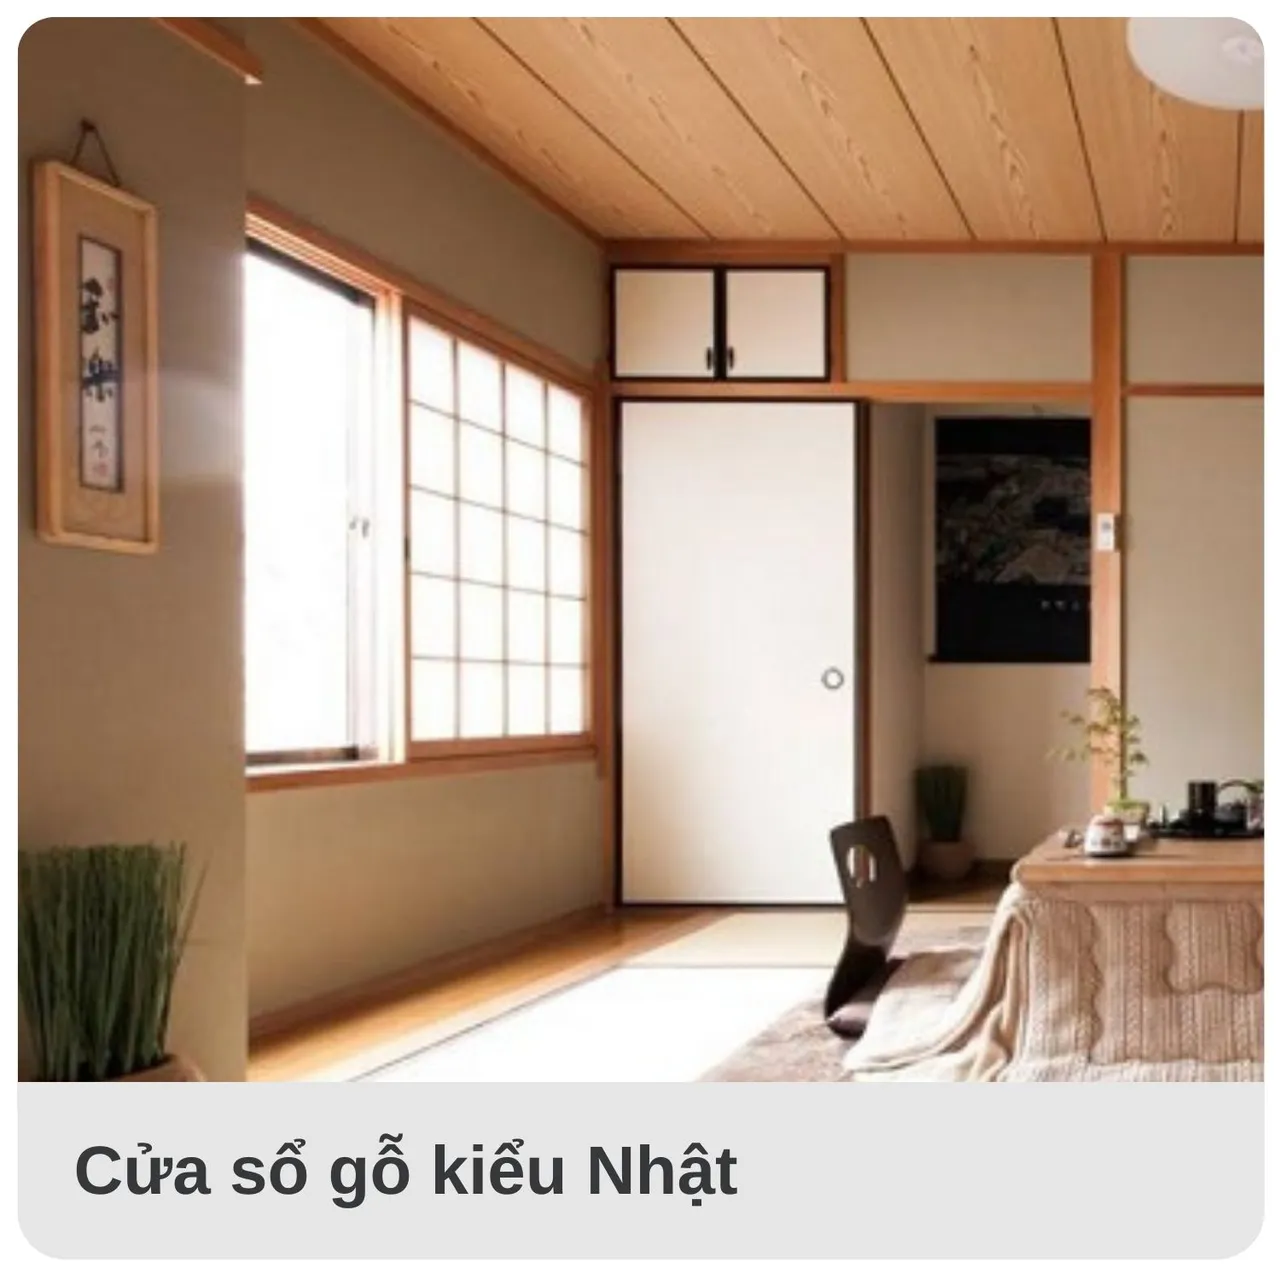 Mẫu cửa sổ gỗ kiểu Nhật với phần gỗ được ứng dụng với diện tích vừa phải